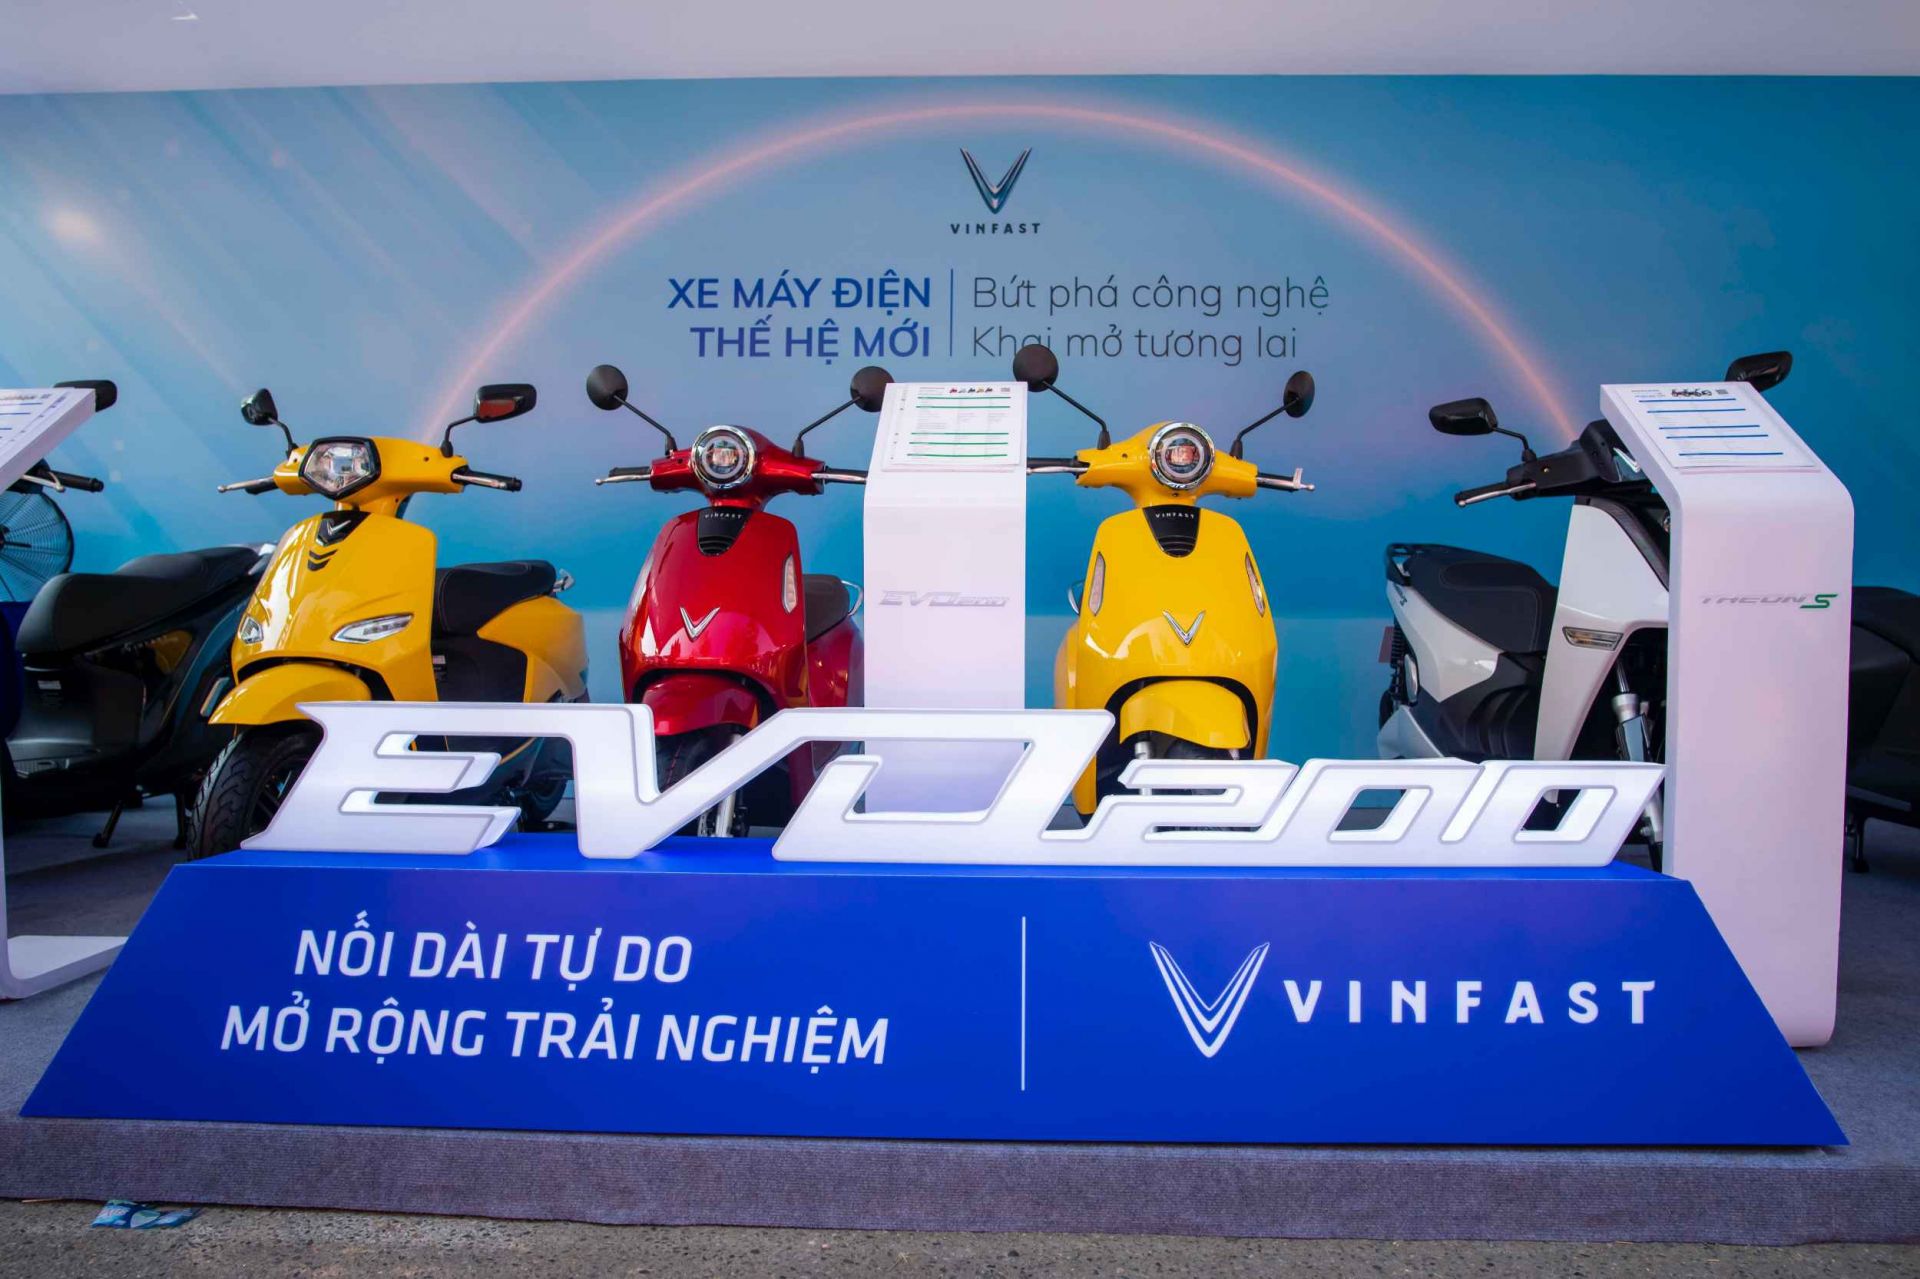 VinFast mang đến Lễ hội Tự hào hàng Việt Nam, Tinh hoa hàng Việt Nam 5 mẫu xe điện: Klara, Feliz, Evo, Theon và Vento